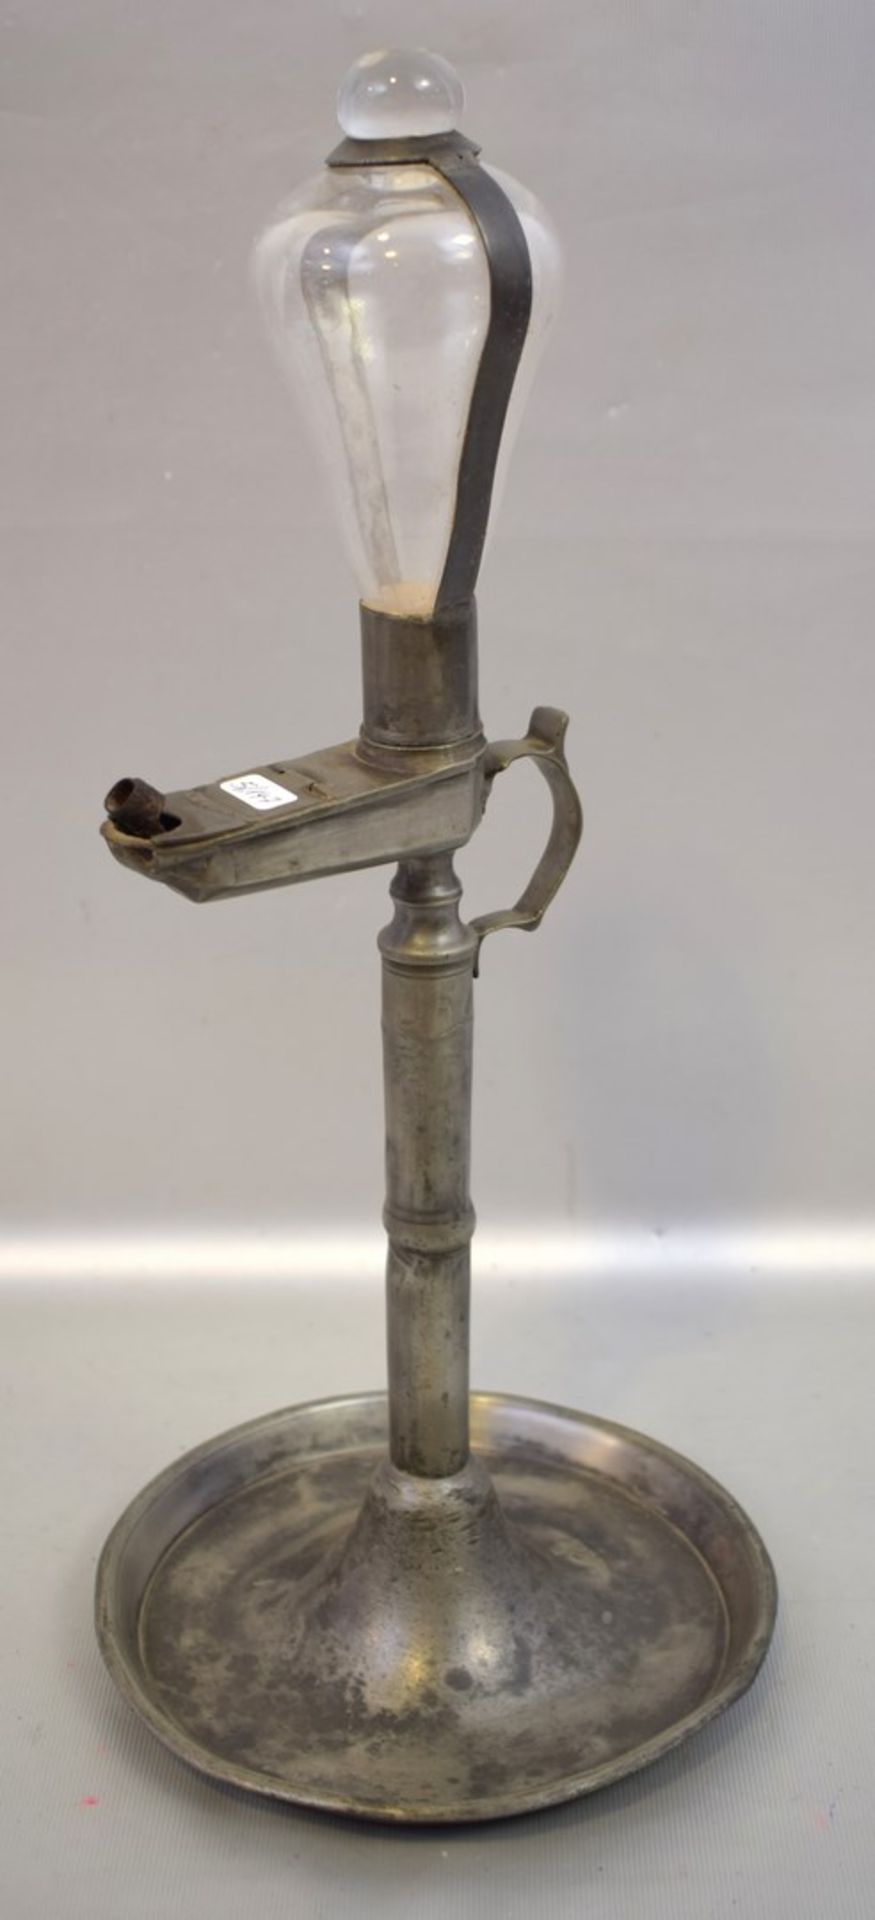 Öllamperunder Fuß mit Tropfenfänger, runder Schaft, farbl. Glaskolben, H 40 cm, 1. Hälfte 19. Jh.